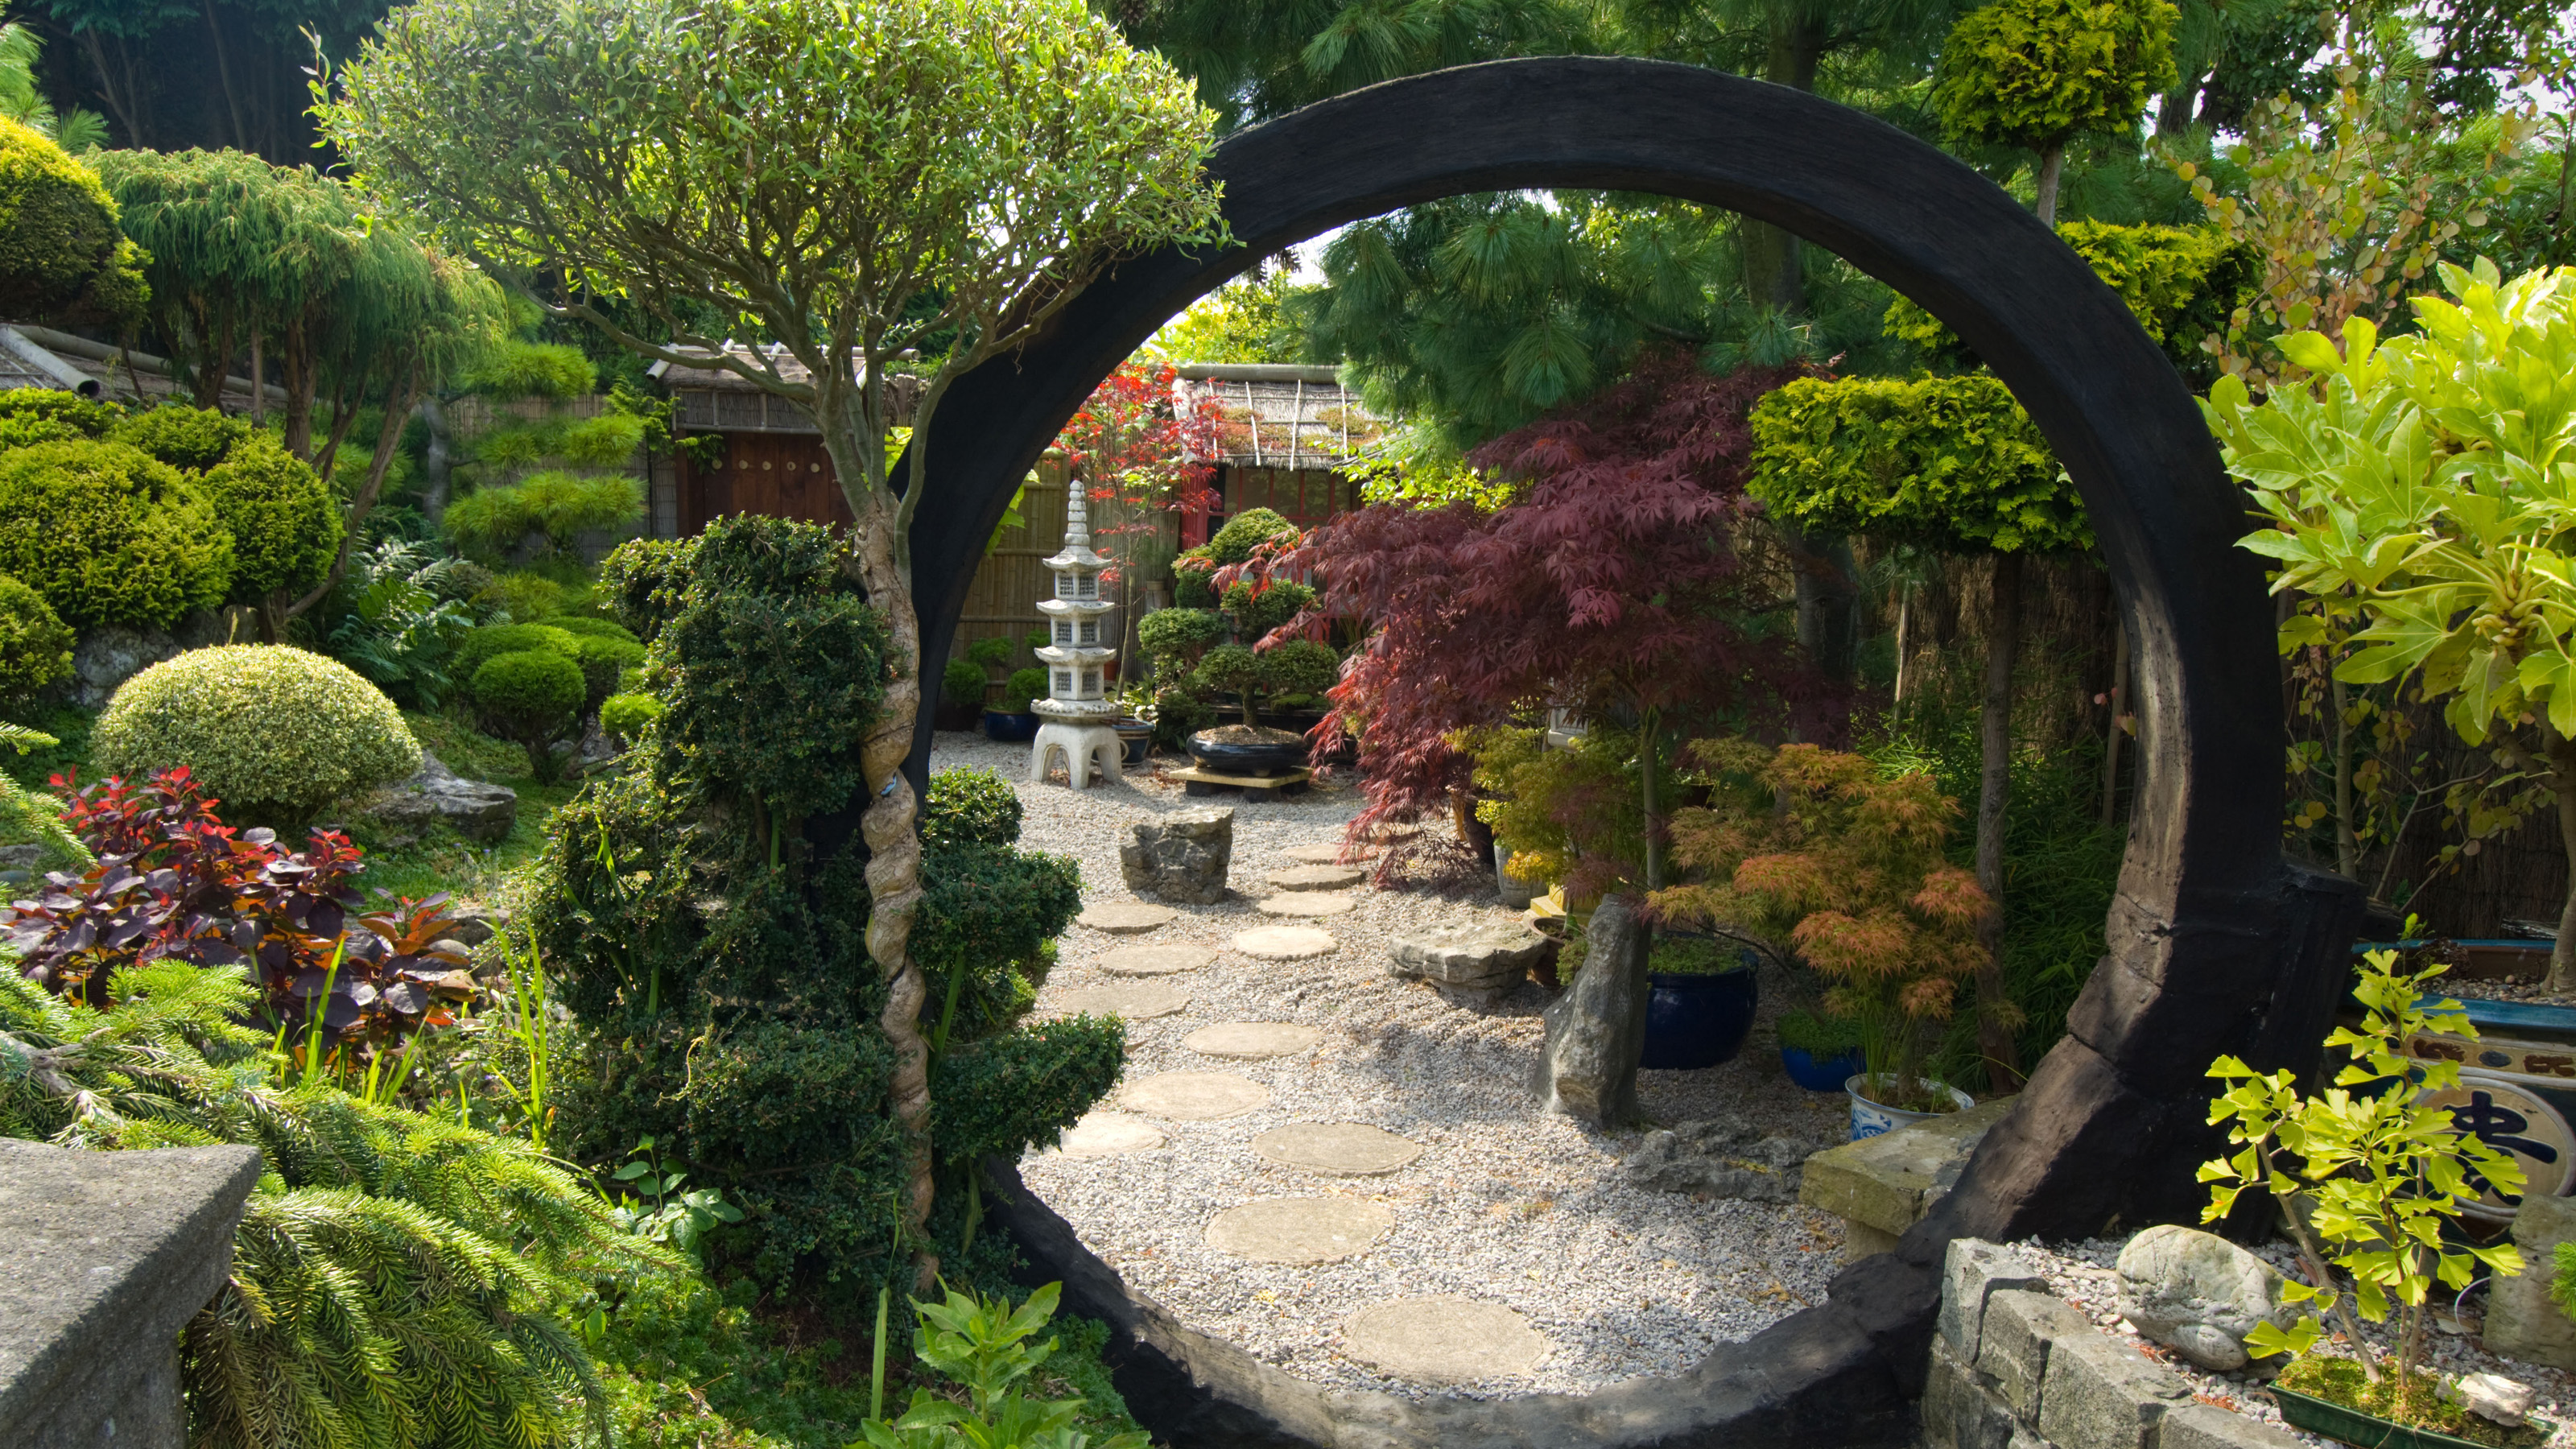  12 plantes japonaises traditionnelles pour votre jardin zen